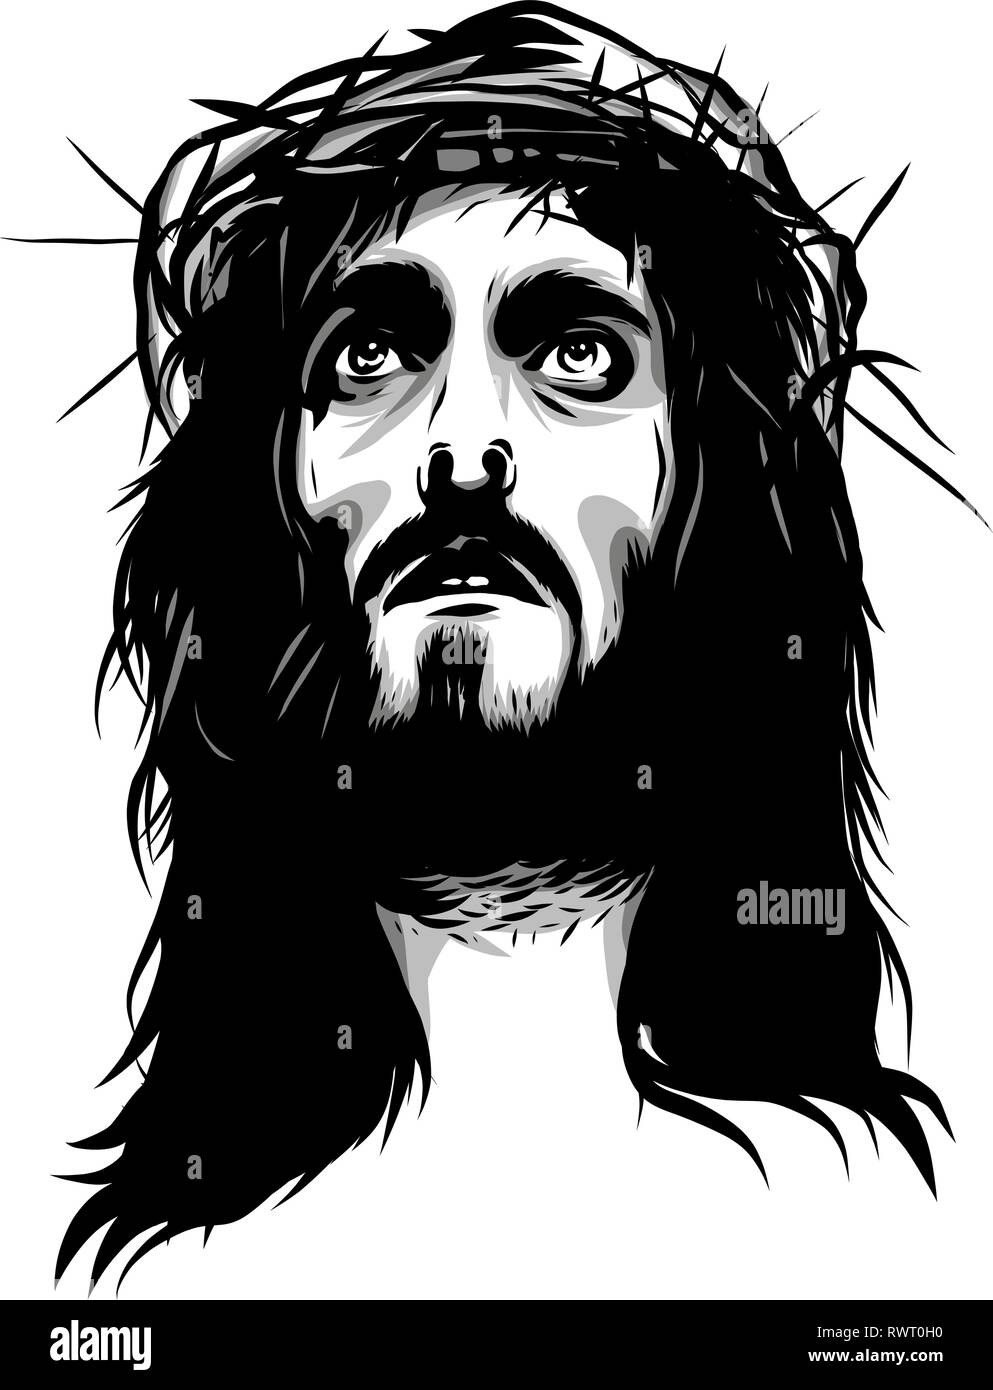 Gesù con corona di spine - DISEGNO